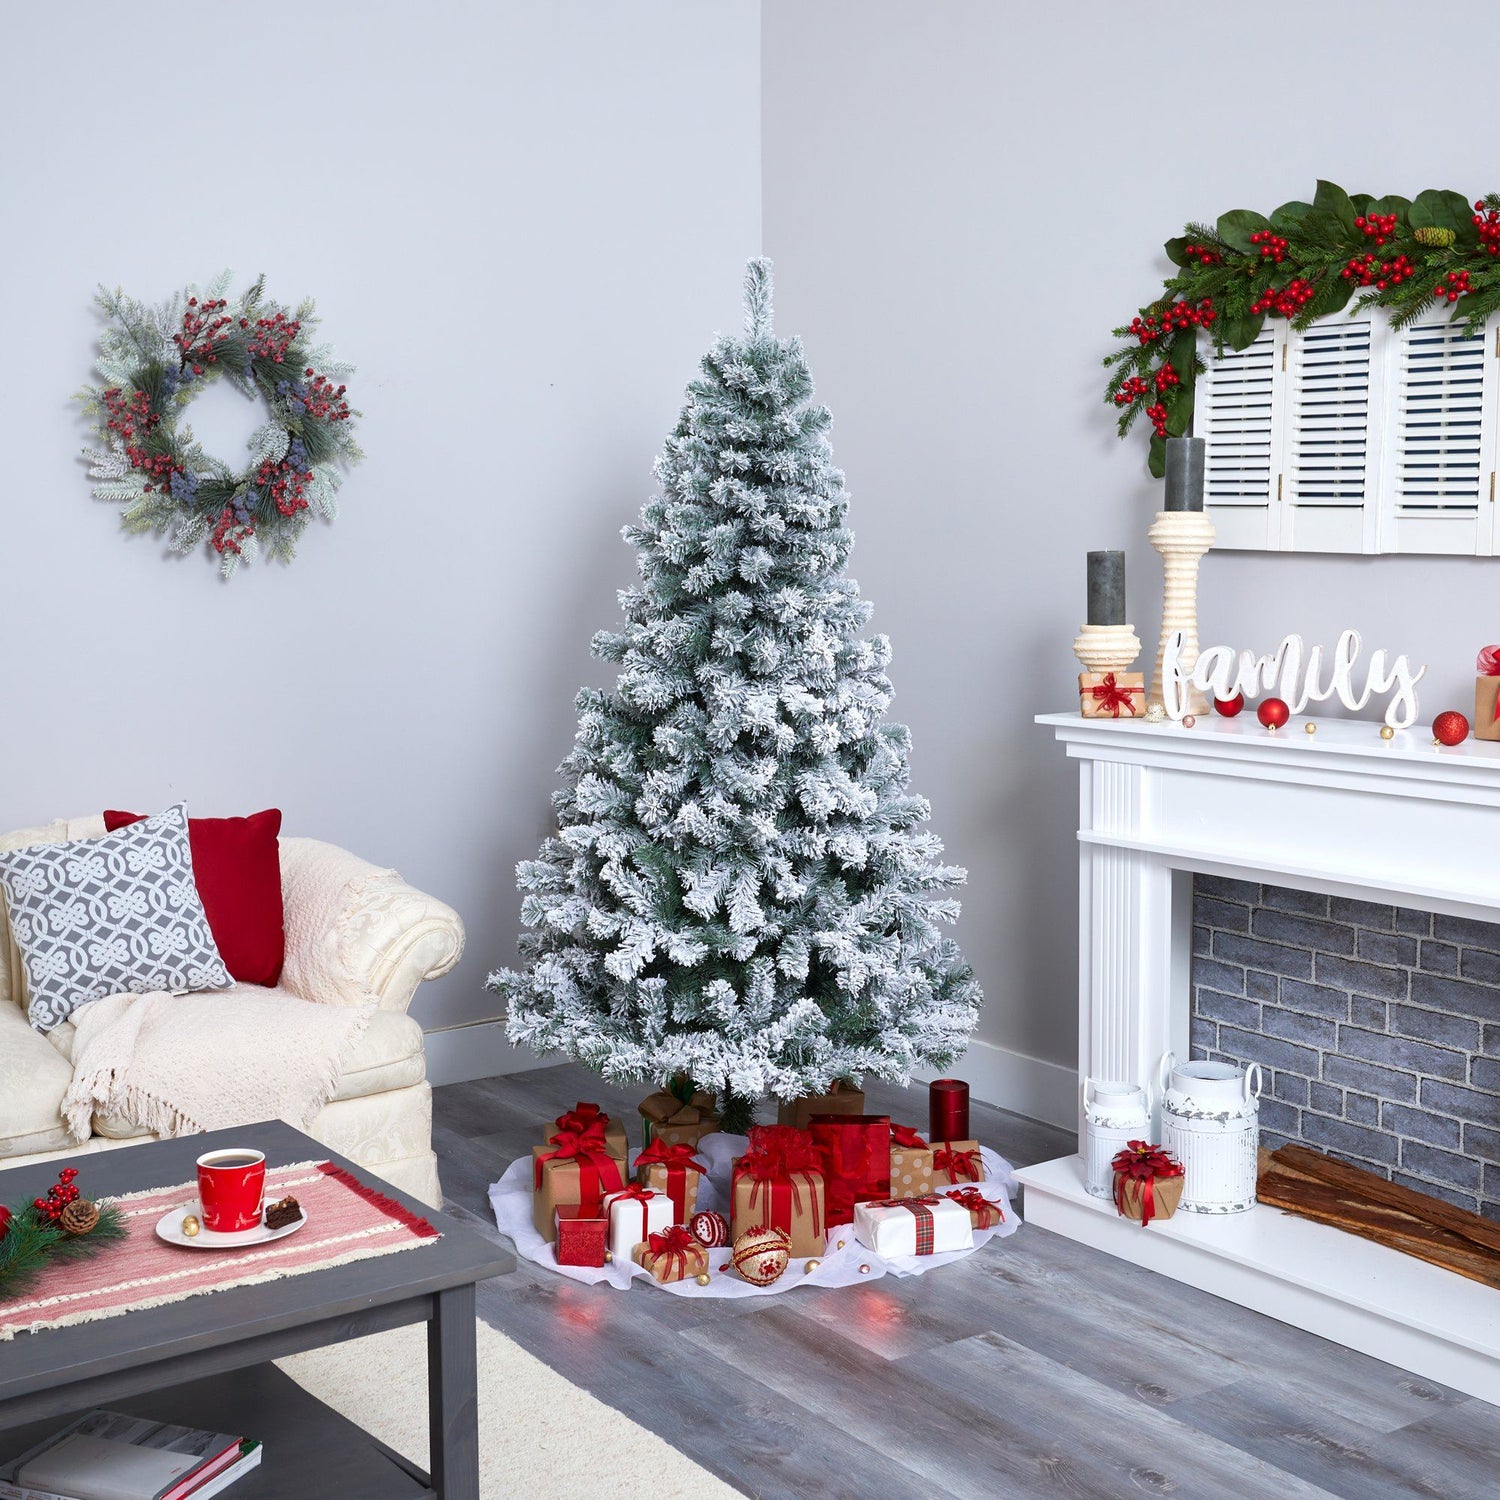 6' Flocked West Virginia Fir Artificial Christmas Tree